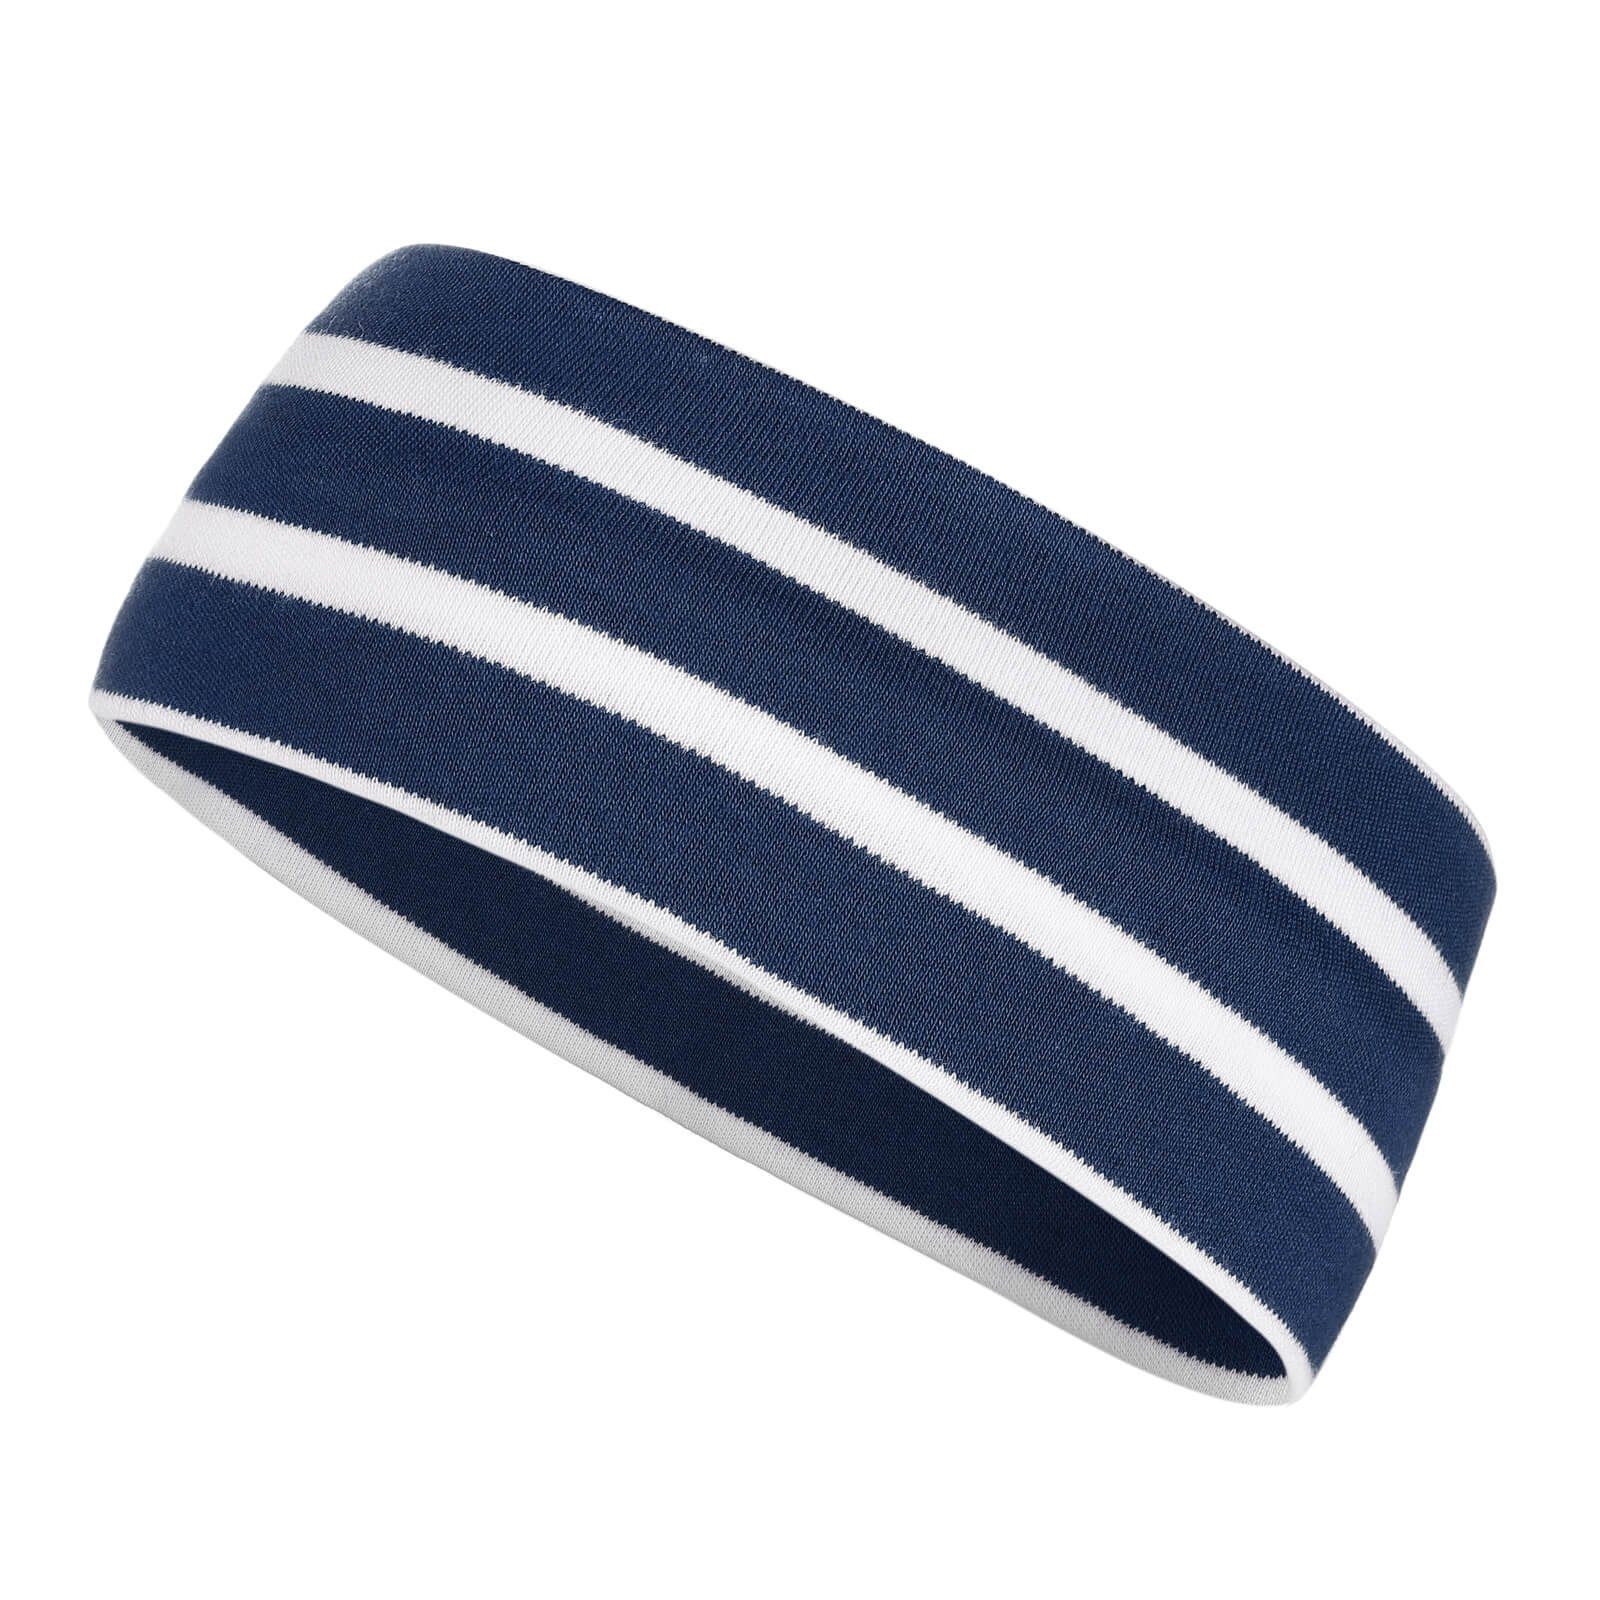 modAS Stirnband Unisex Kopfband Maritim für Kinder und Erwachsene zweilagig Baumwolle (85) blaumel. / weiß